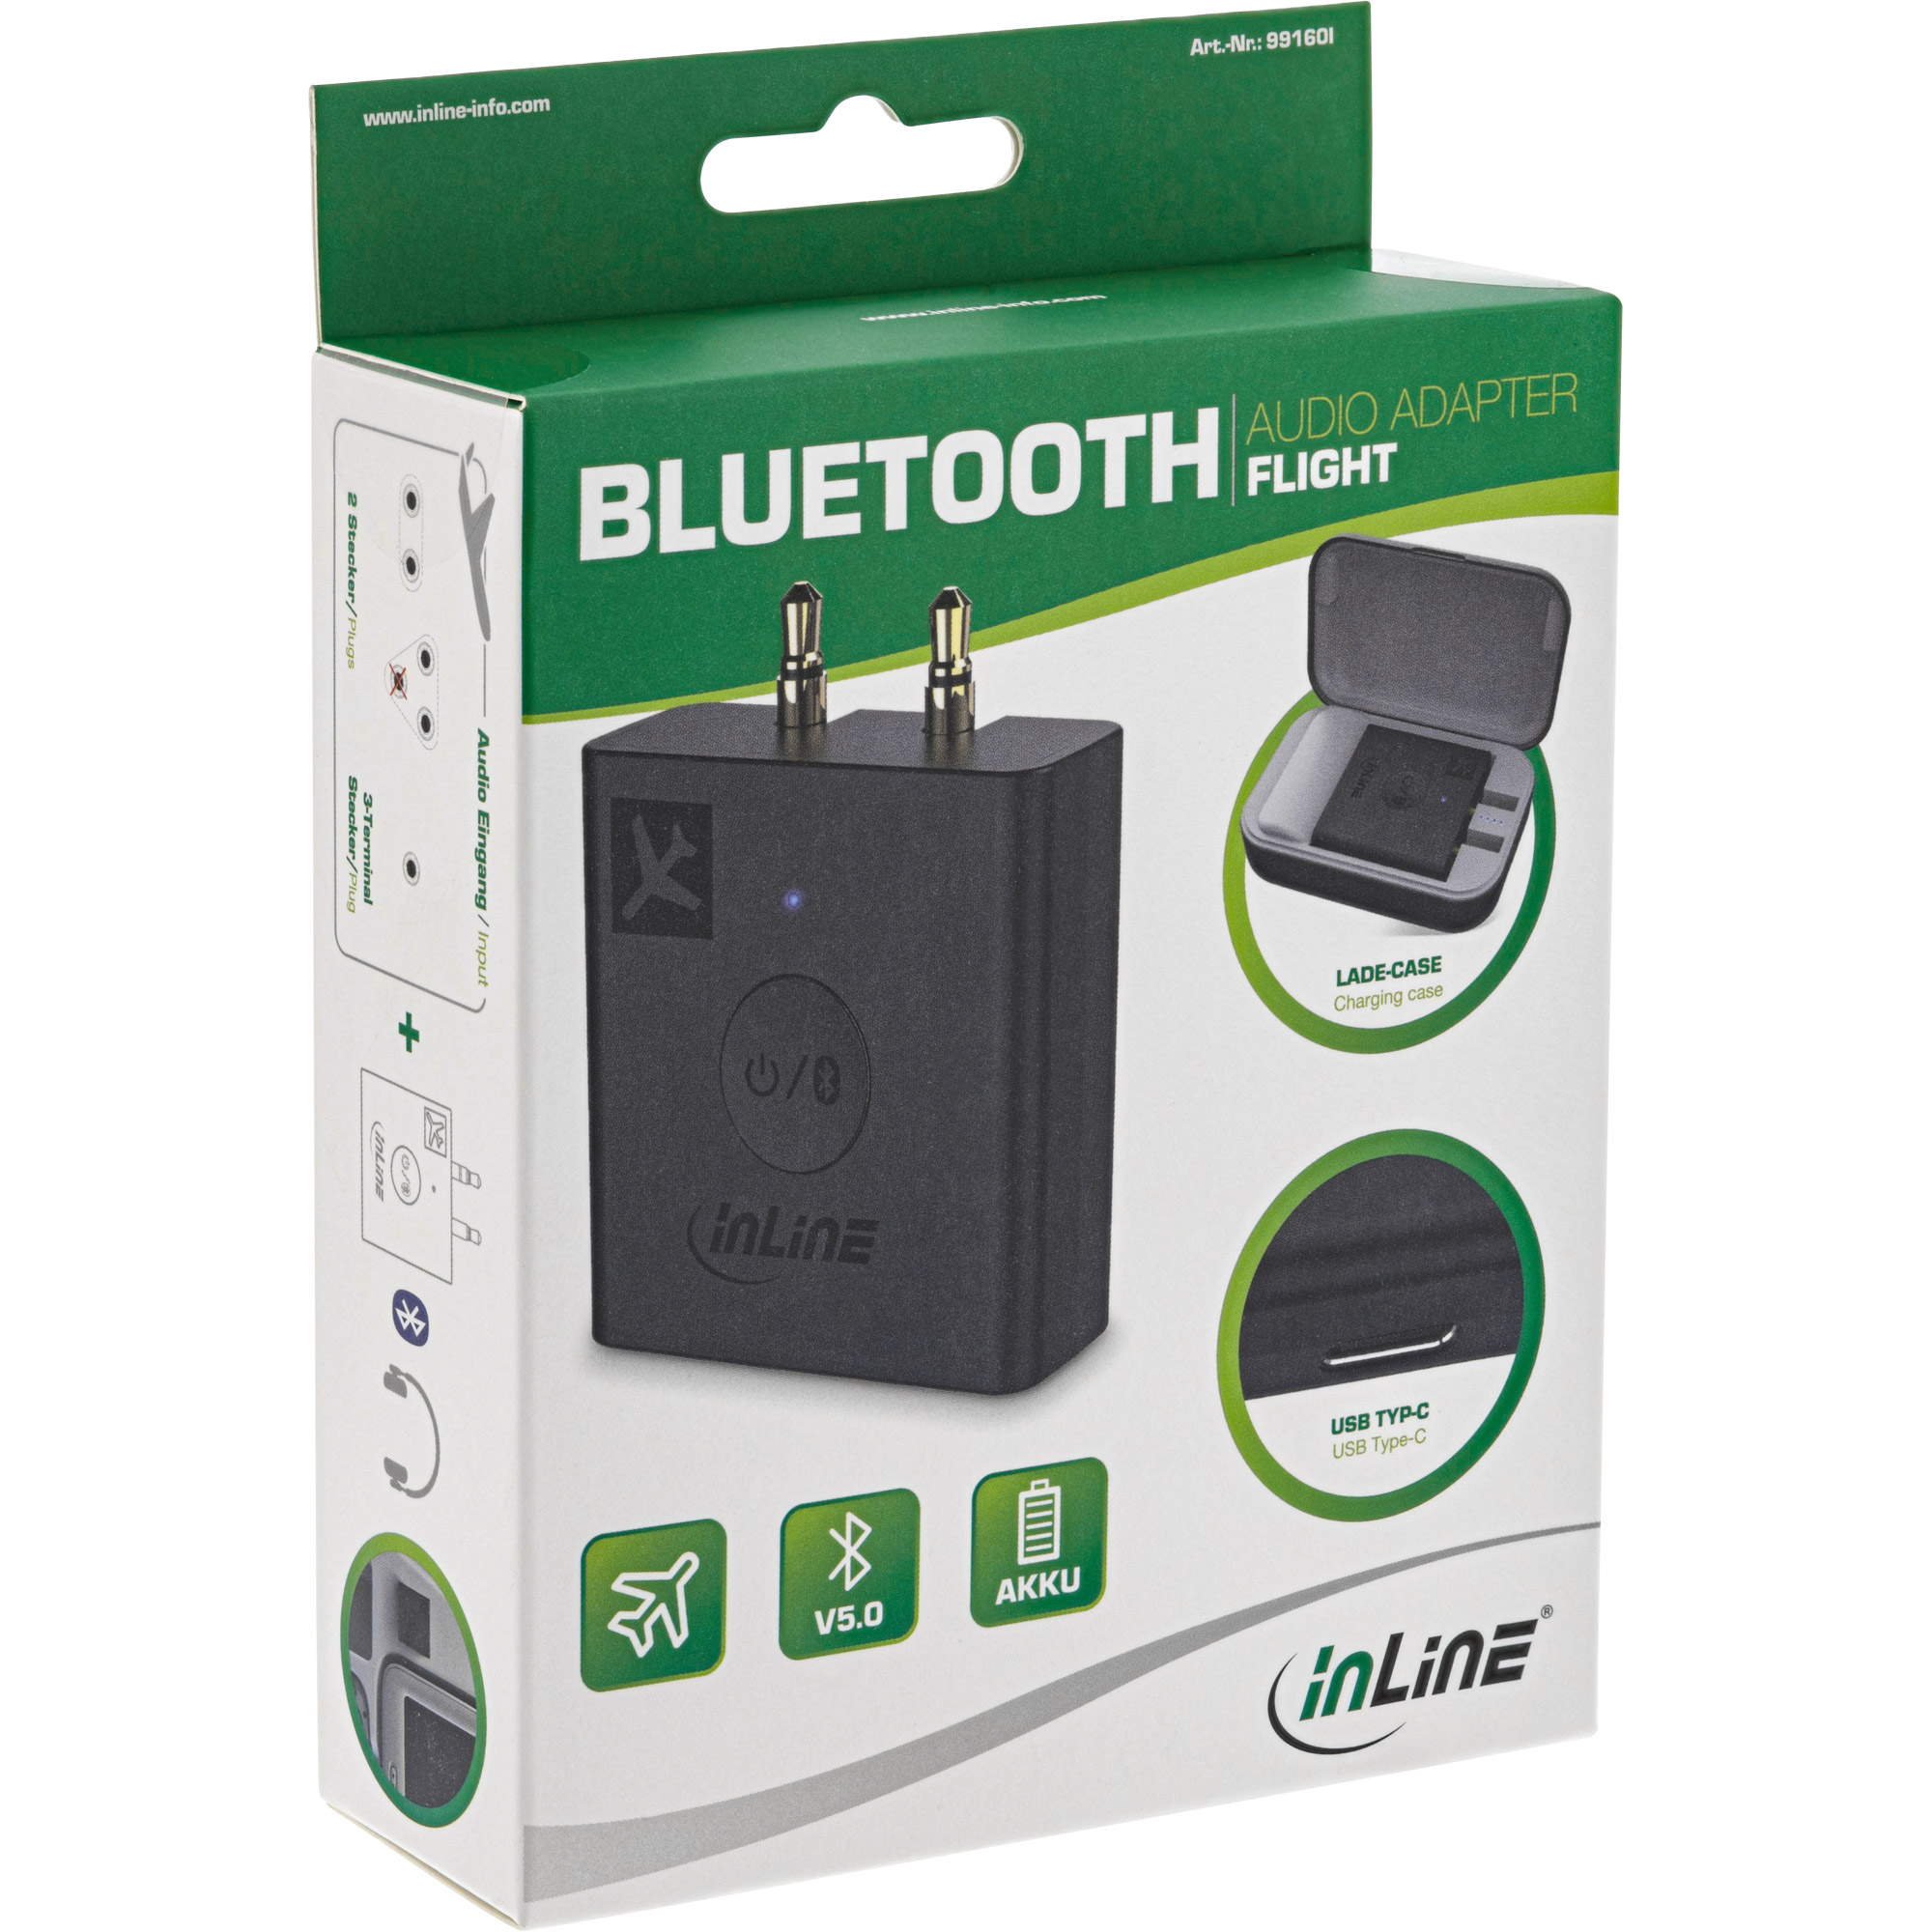 InLine® Flugzeug Bluetooth Audio Transmitter Sender, BT 5.0, aptX HD/LL,  Flight Adapter mit Ladecase - best4you